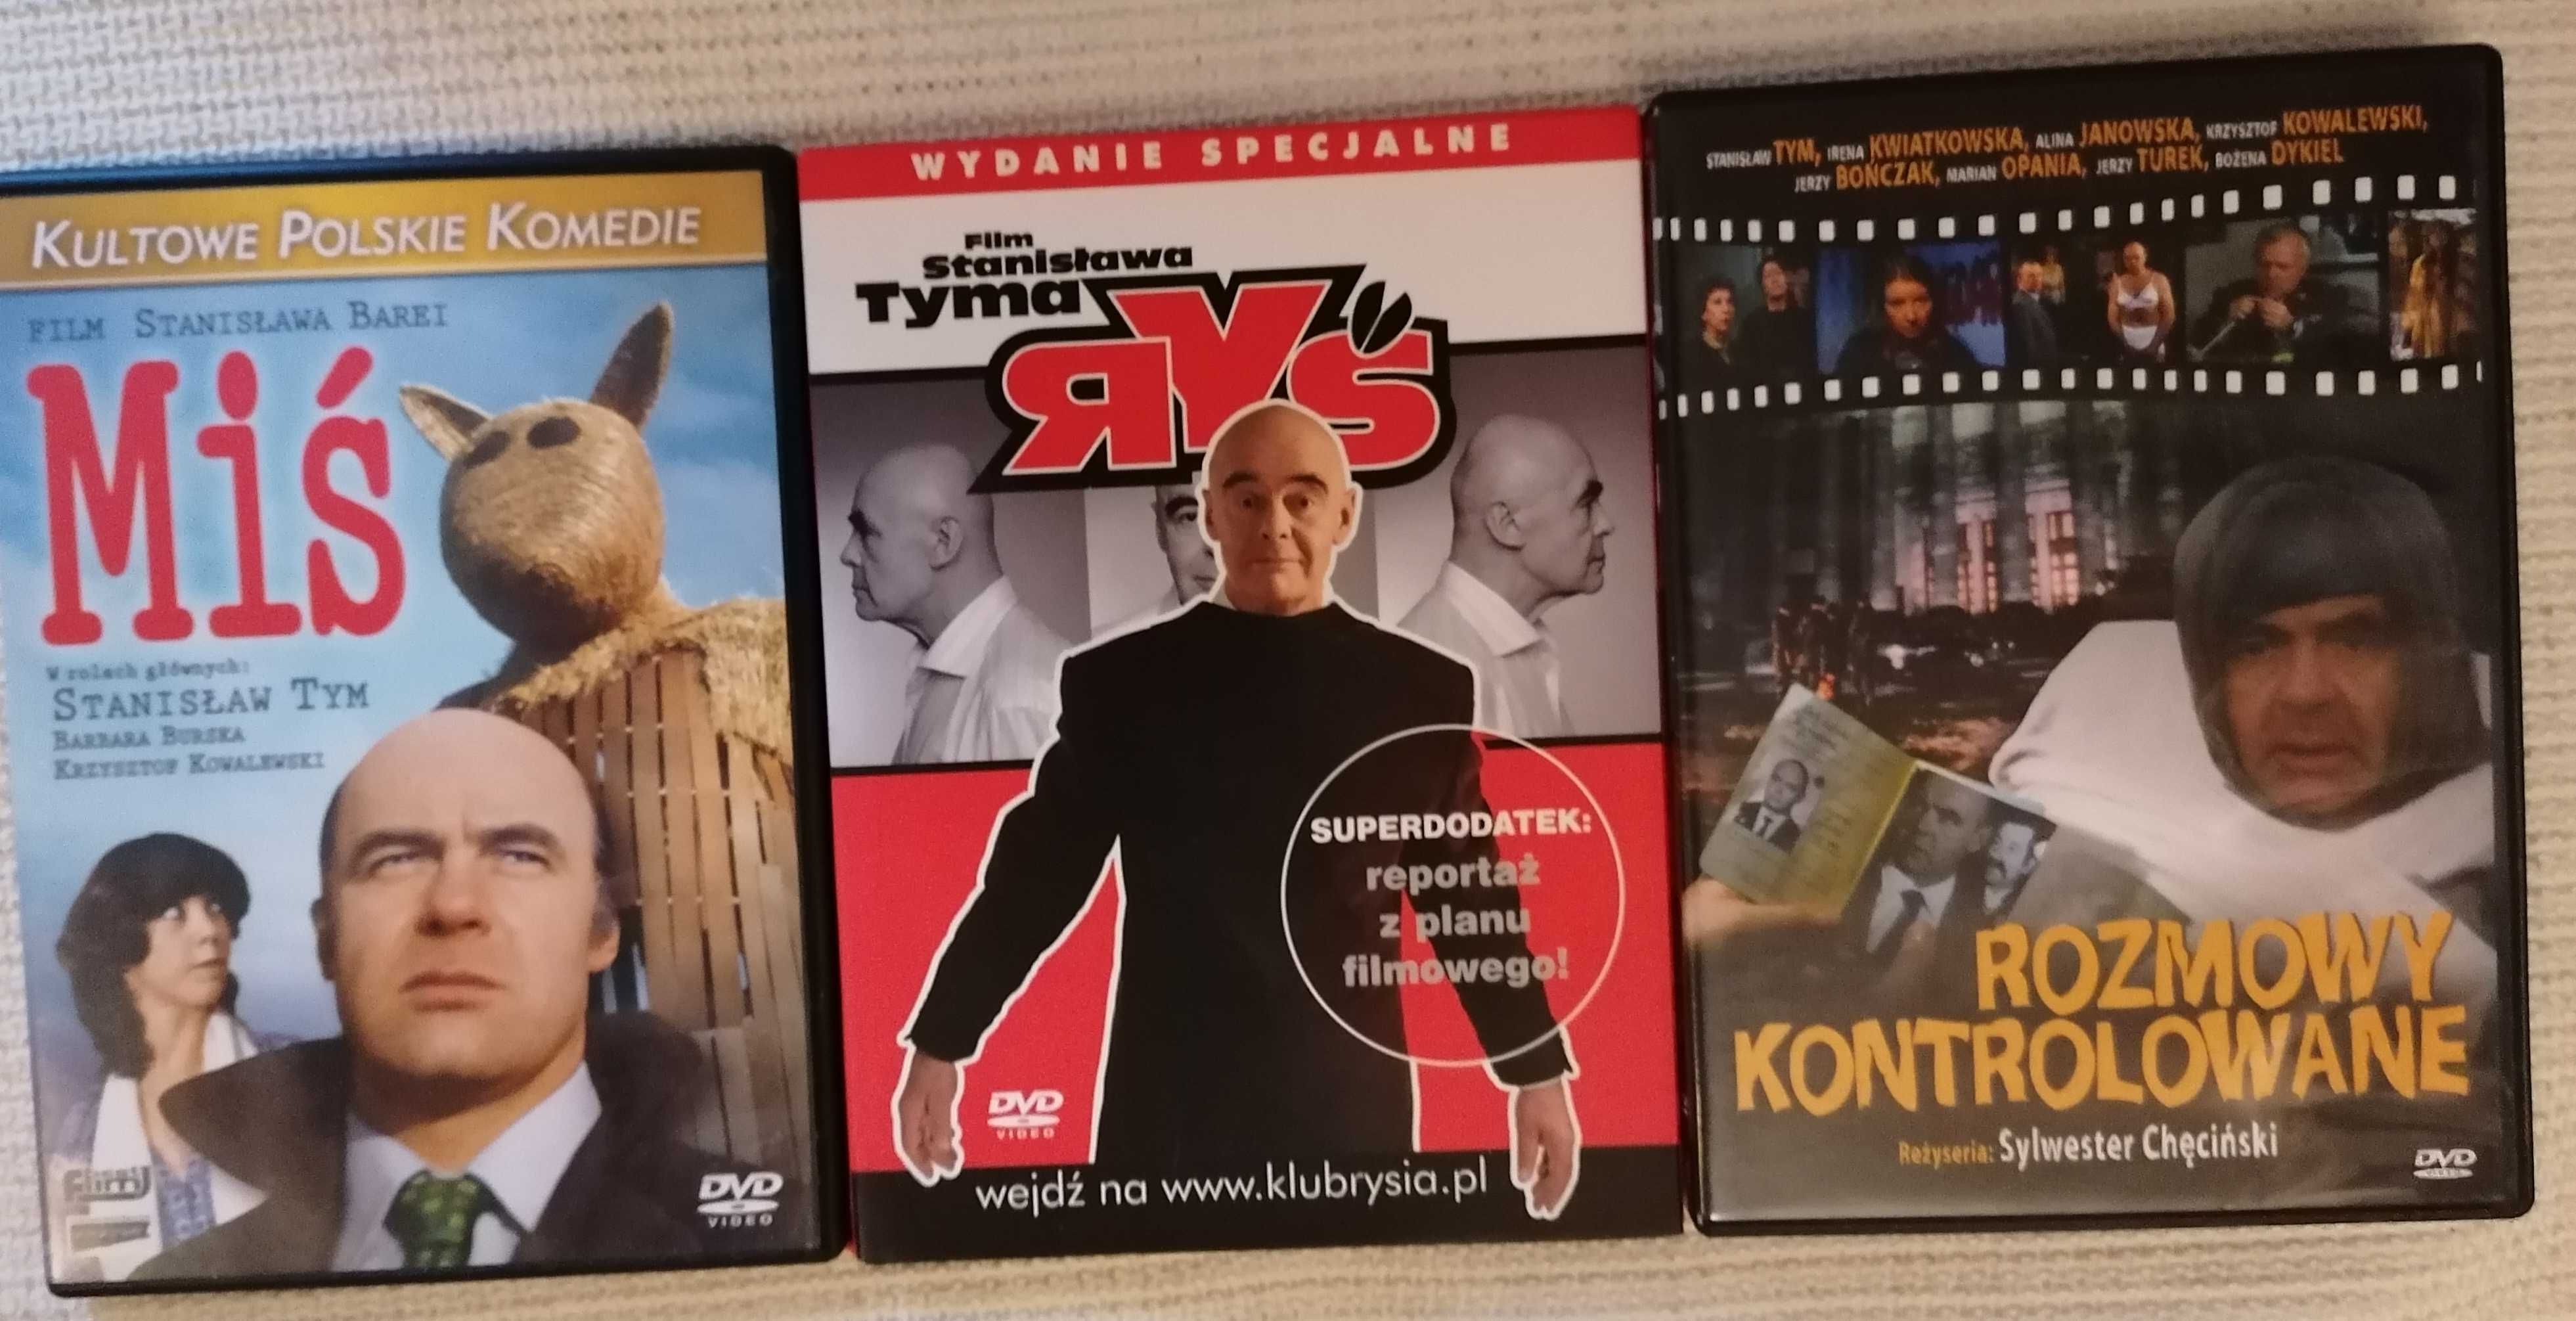 Stanisław Tym, trzy kultowe filmy dvd